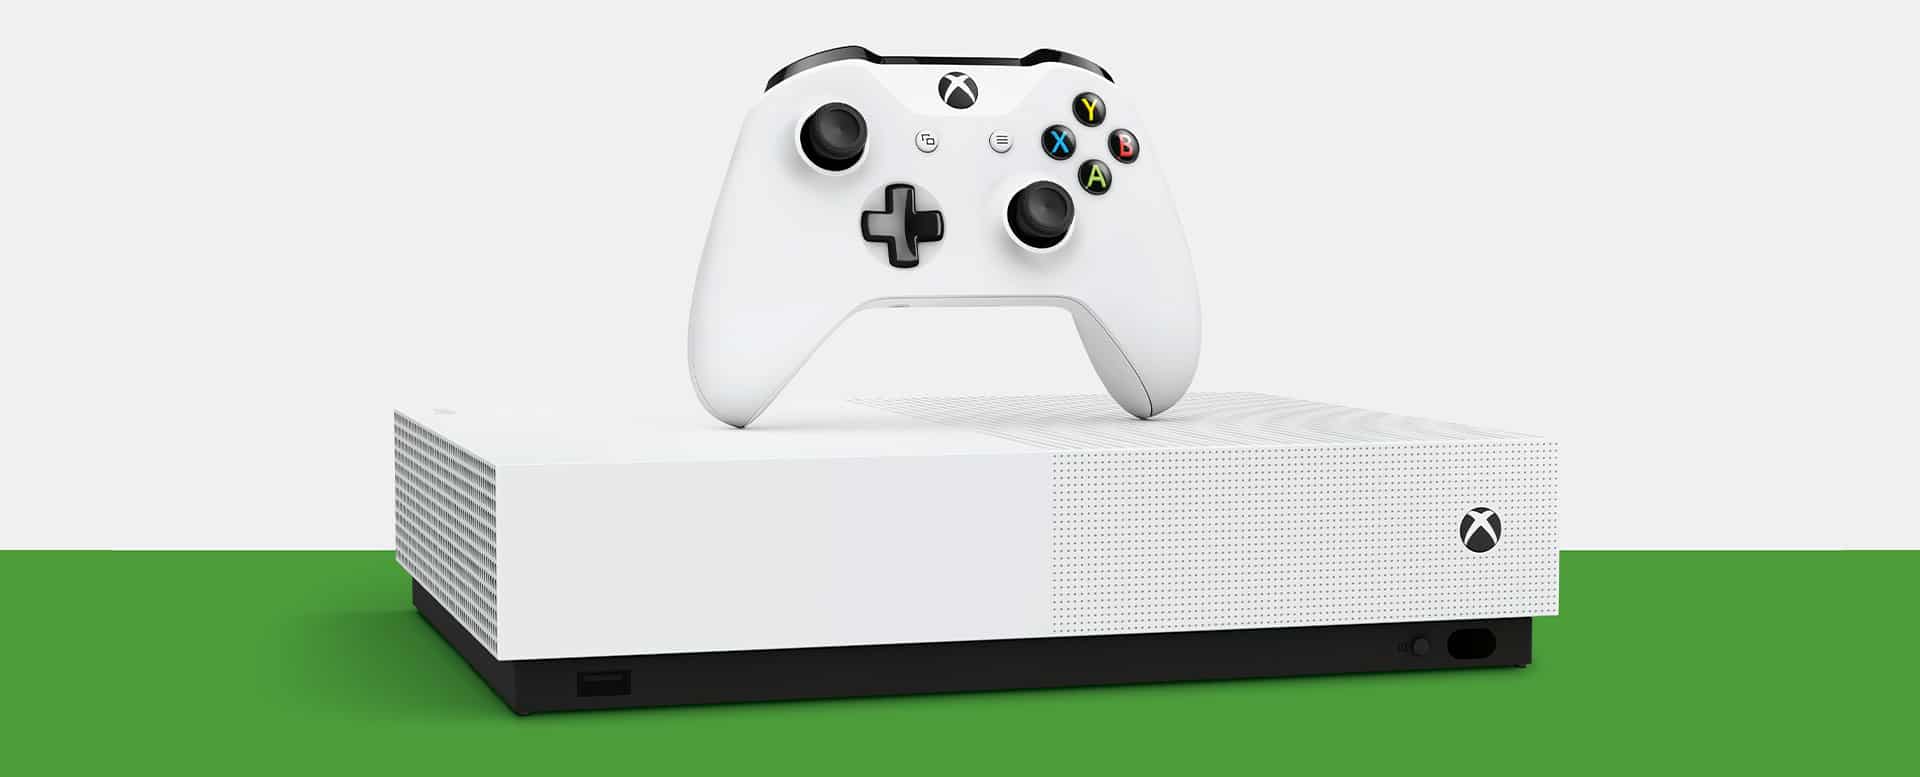 مايكروسوفت تعلن رسميًا عن منصة Xbox One S All-Digital بلا قارئ أقراص